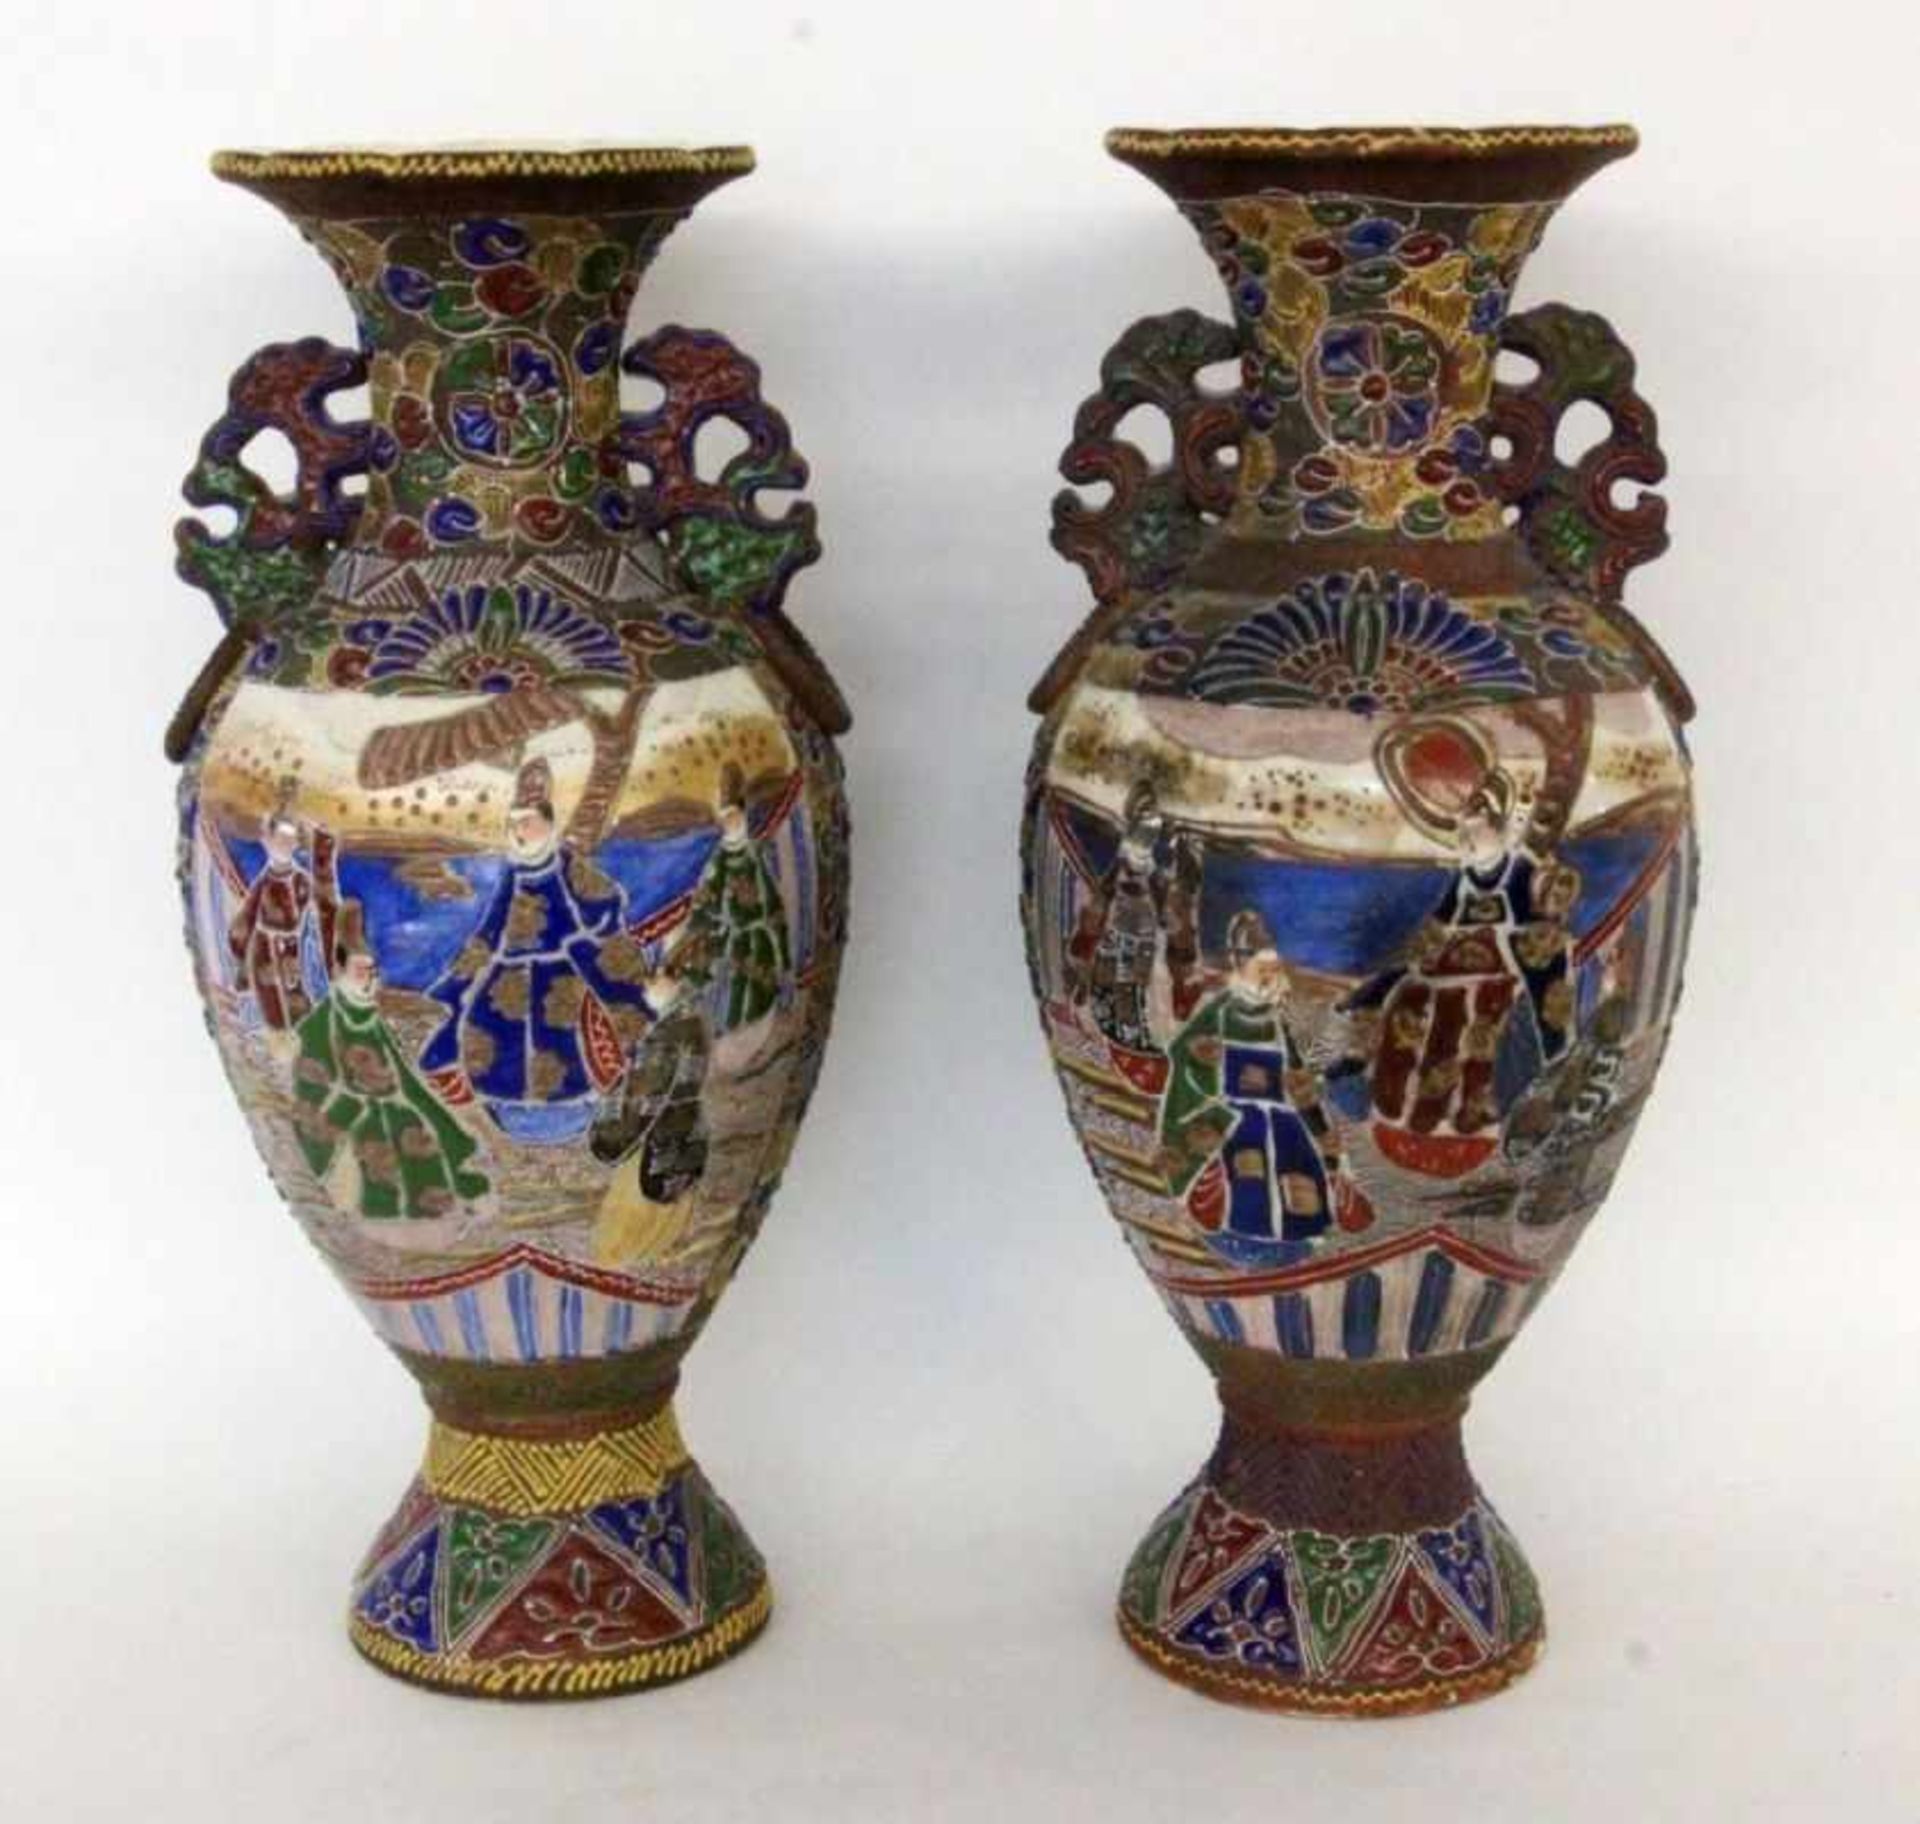 PAAR SATSUMA VASENJapan Keramik mit farbiger Emailbemalung. H.47cmA PAIR OF SATSUMA VASES Japan